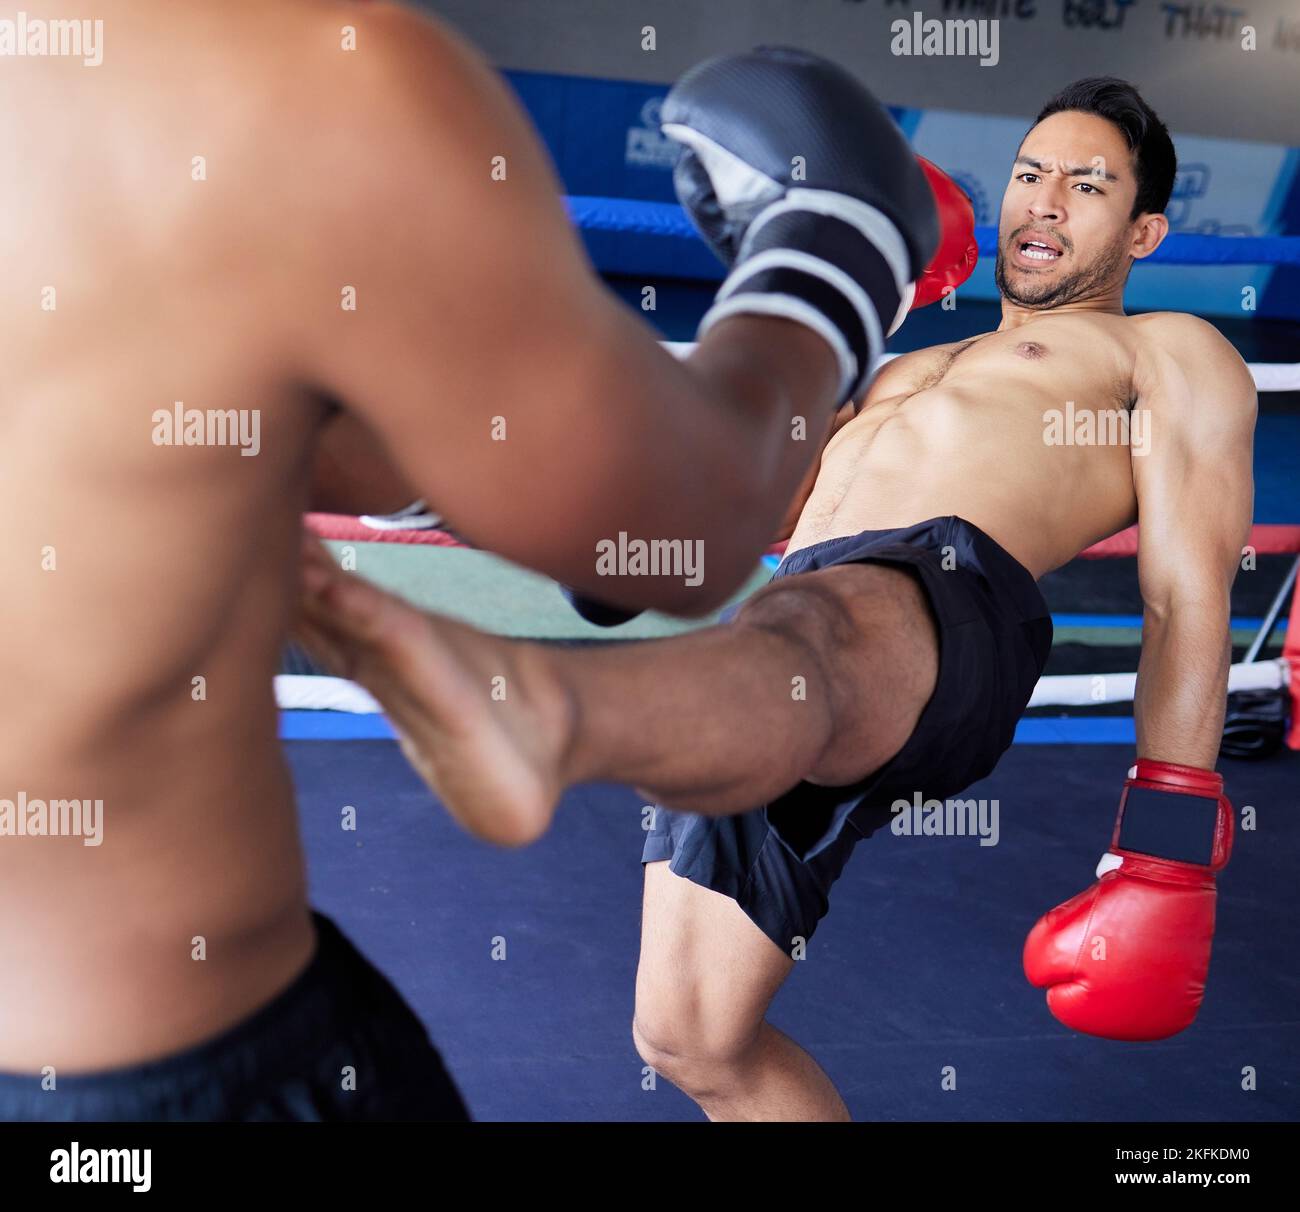 Boxer-, Kampf- und Sportwettbewerb mit Männern im Boxring für Bewegung, Training und Kampfsport-Training in einem Fitnessclub. Sportler Mann in Aktion Stockfoto